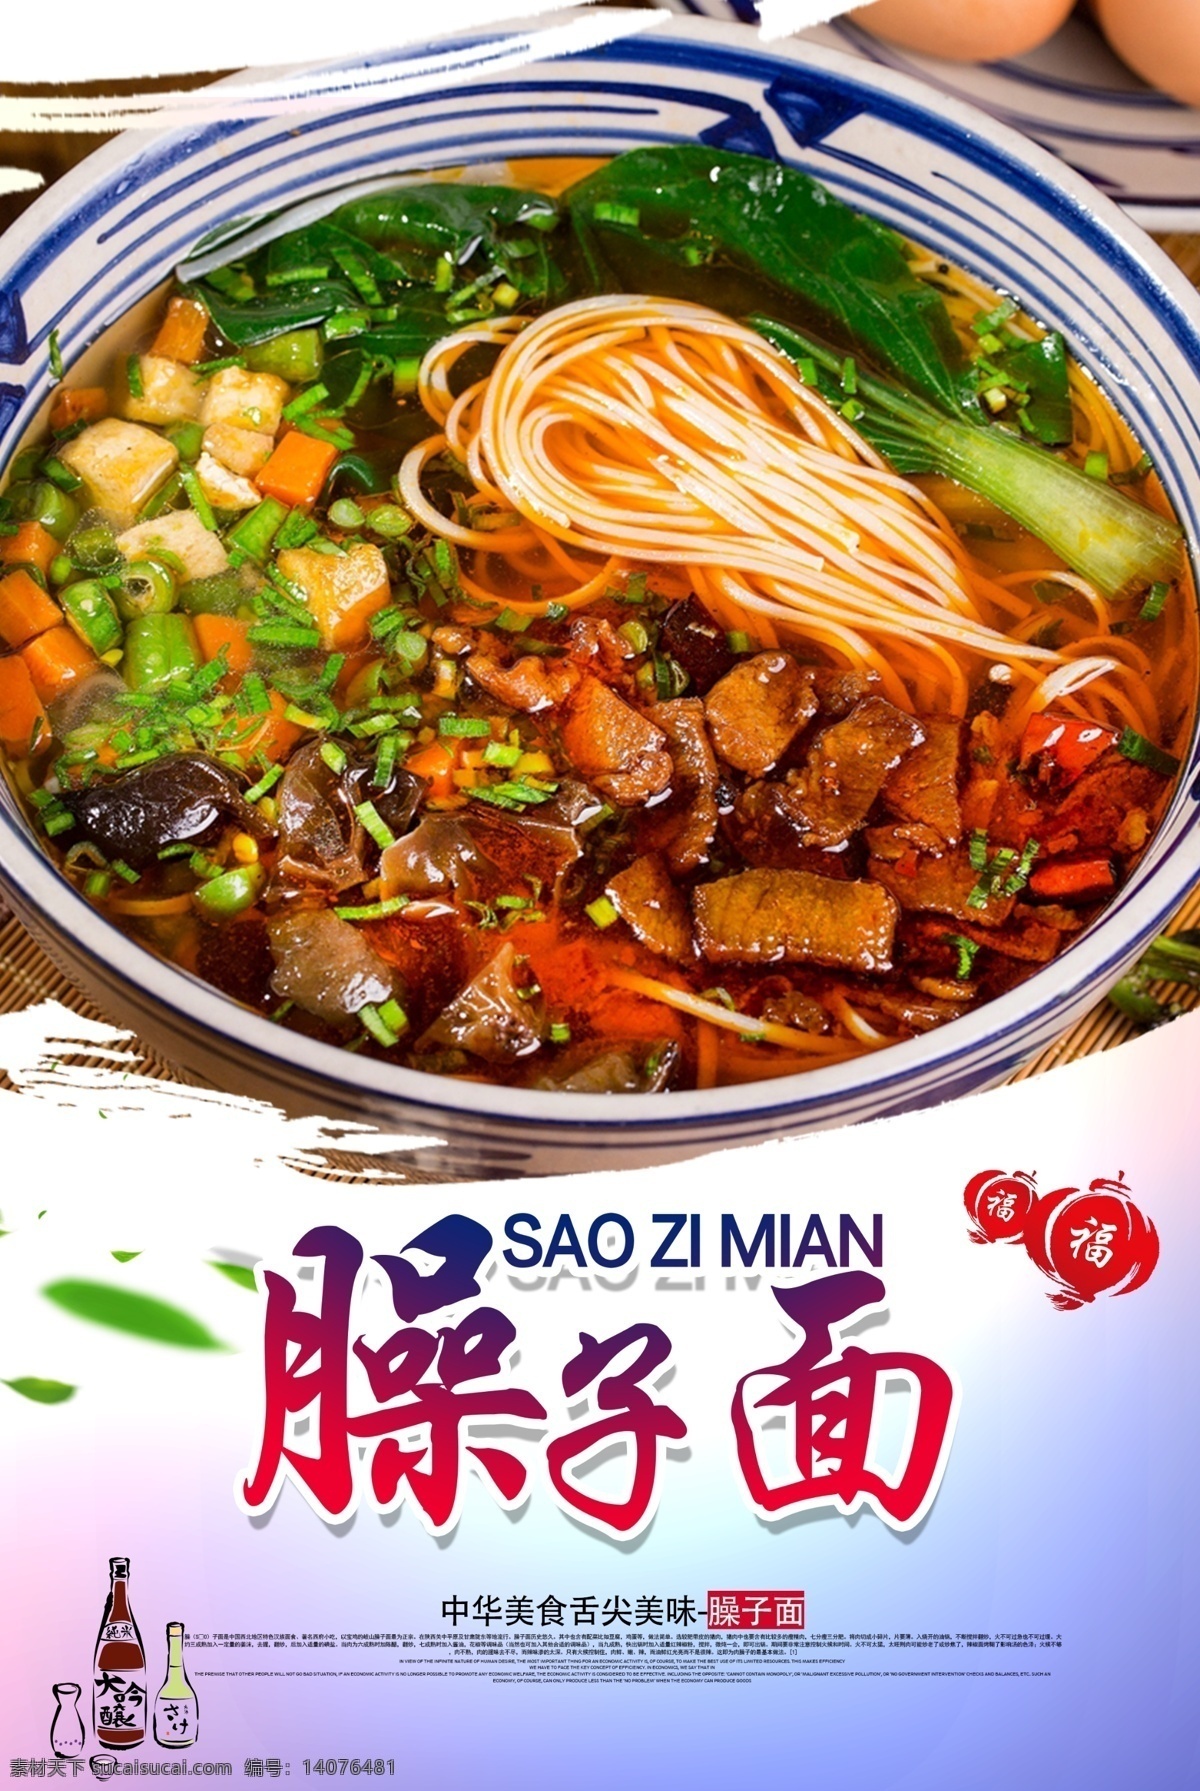 陕西臊子面 臊子面图片 中华美食 传统饮食 海报